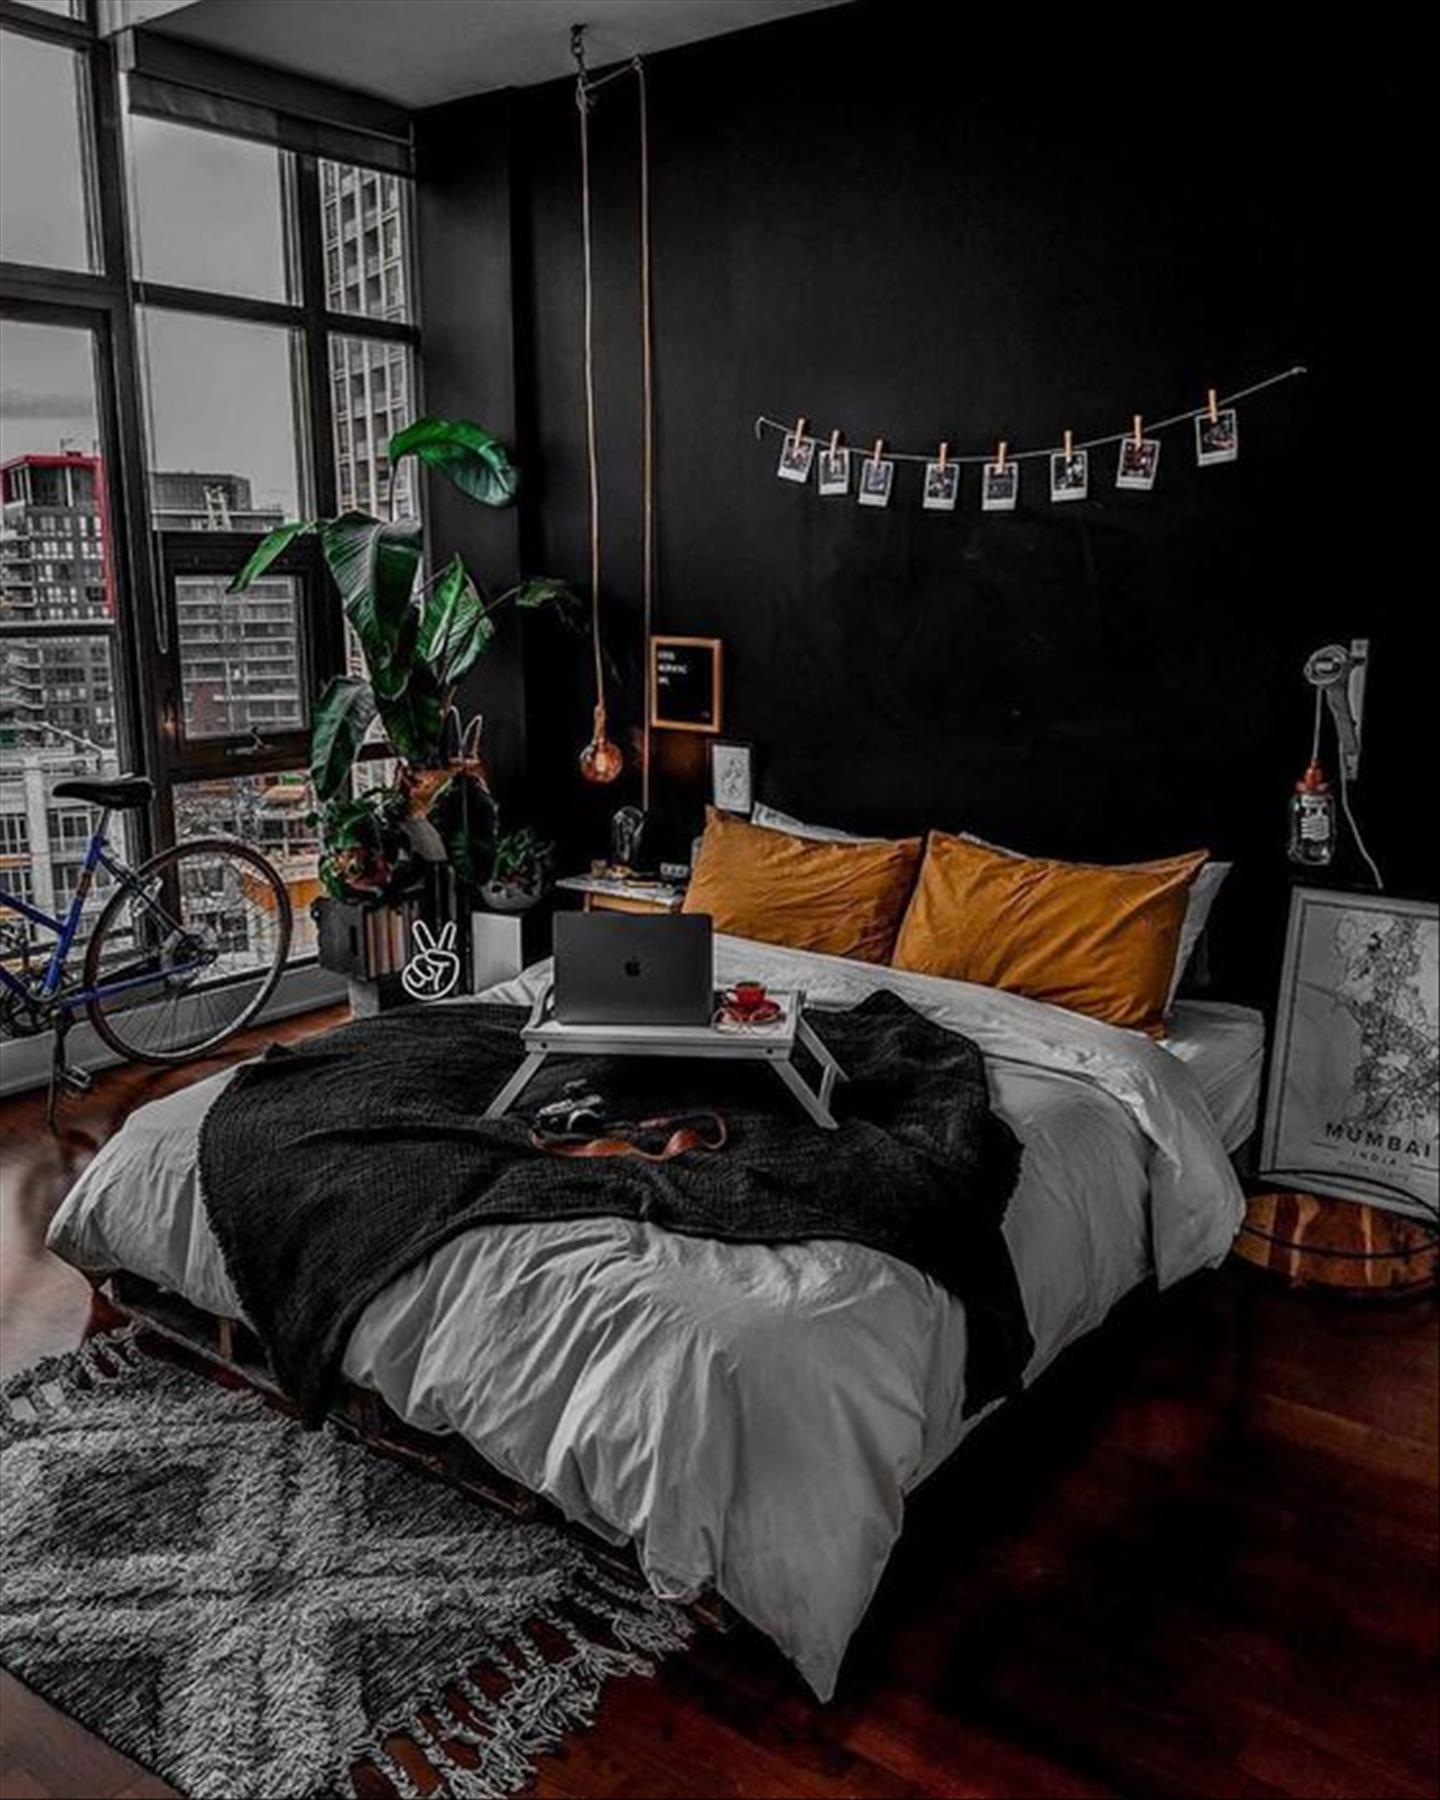 Cozy dark and moody bedroom decoration ideas